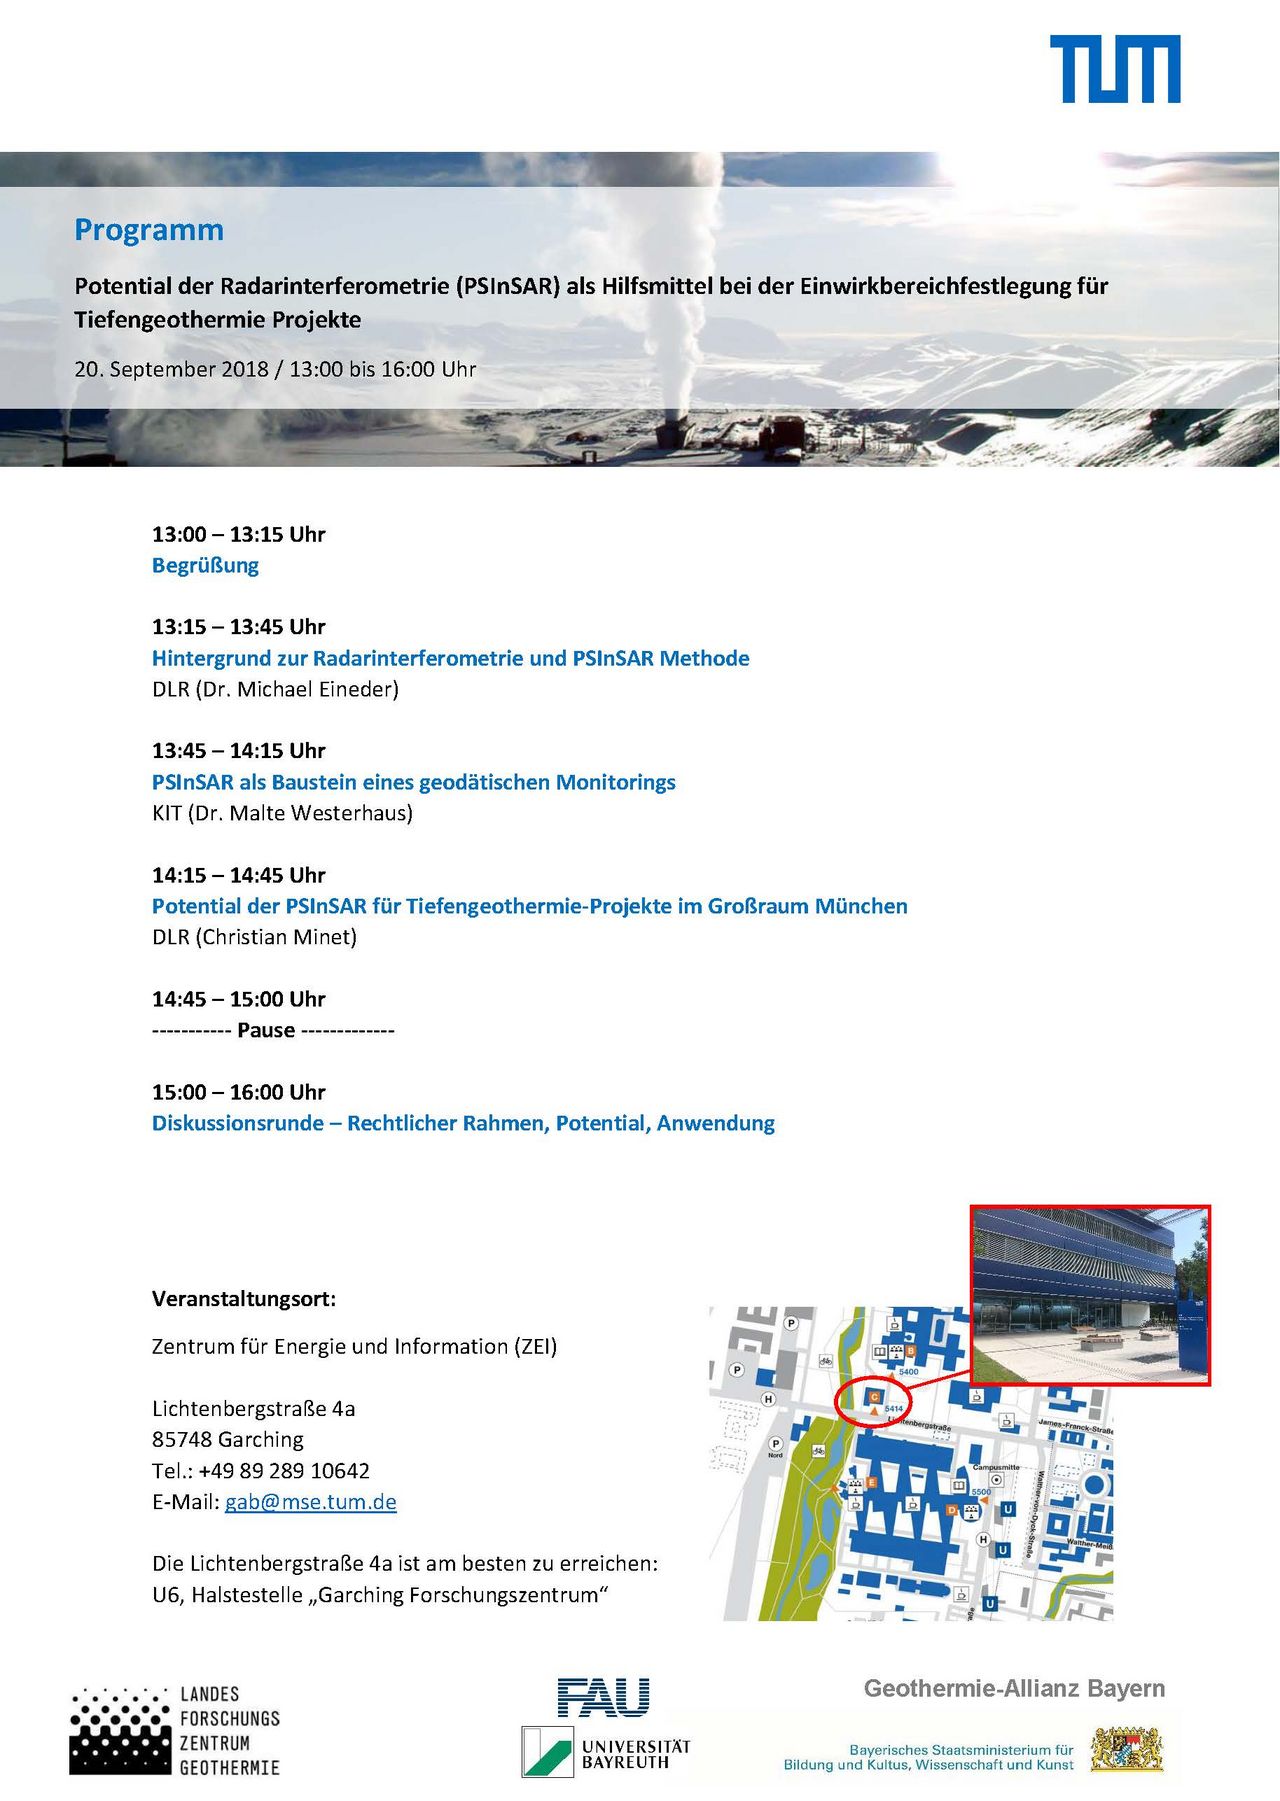 Agenda zum Workshop "Potential der Radarinterferometrie"